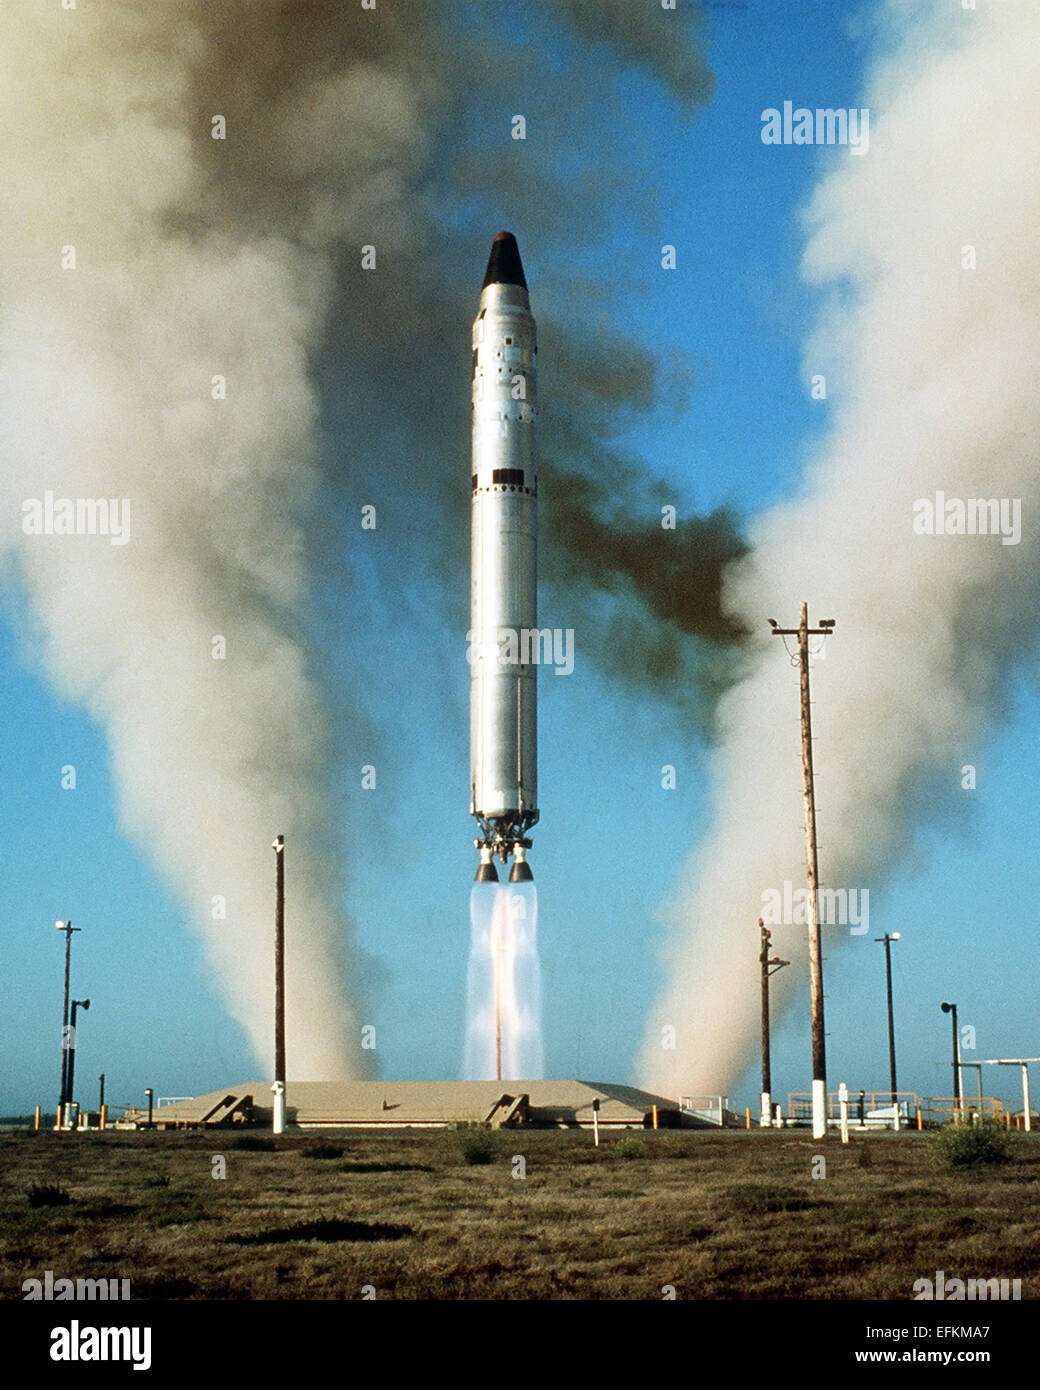 Une armée de l'air II Titan missile balistique intercontinental II missile d'une ogive W53 s'inscrivent dans la Mk-6 re-entry vehicle lancé au cours d'un essai à Vandenberg Air Force Base Janvier 1, 1975 à Vandenberg, en Californie. Banque D'Images